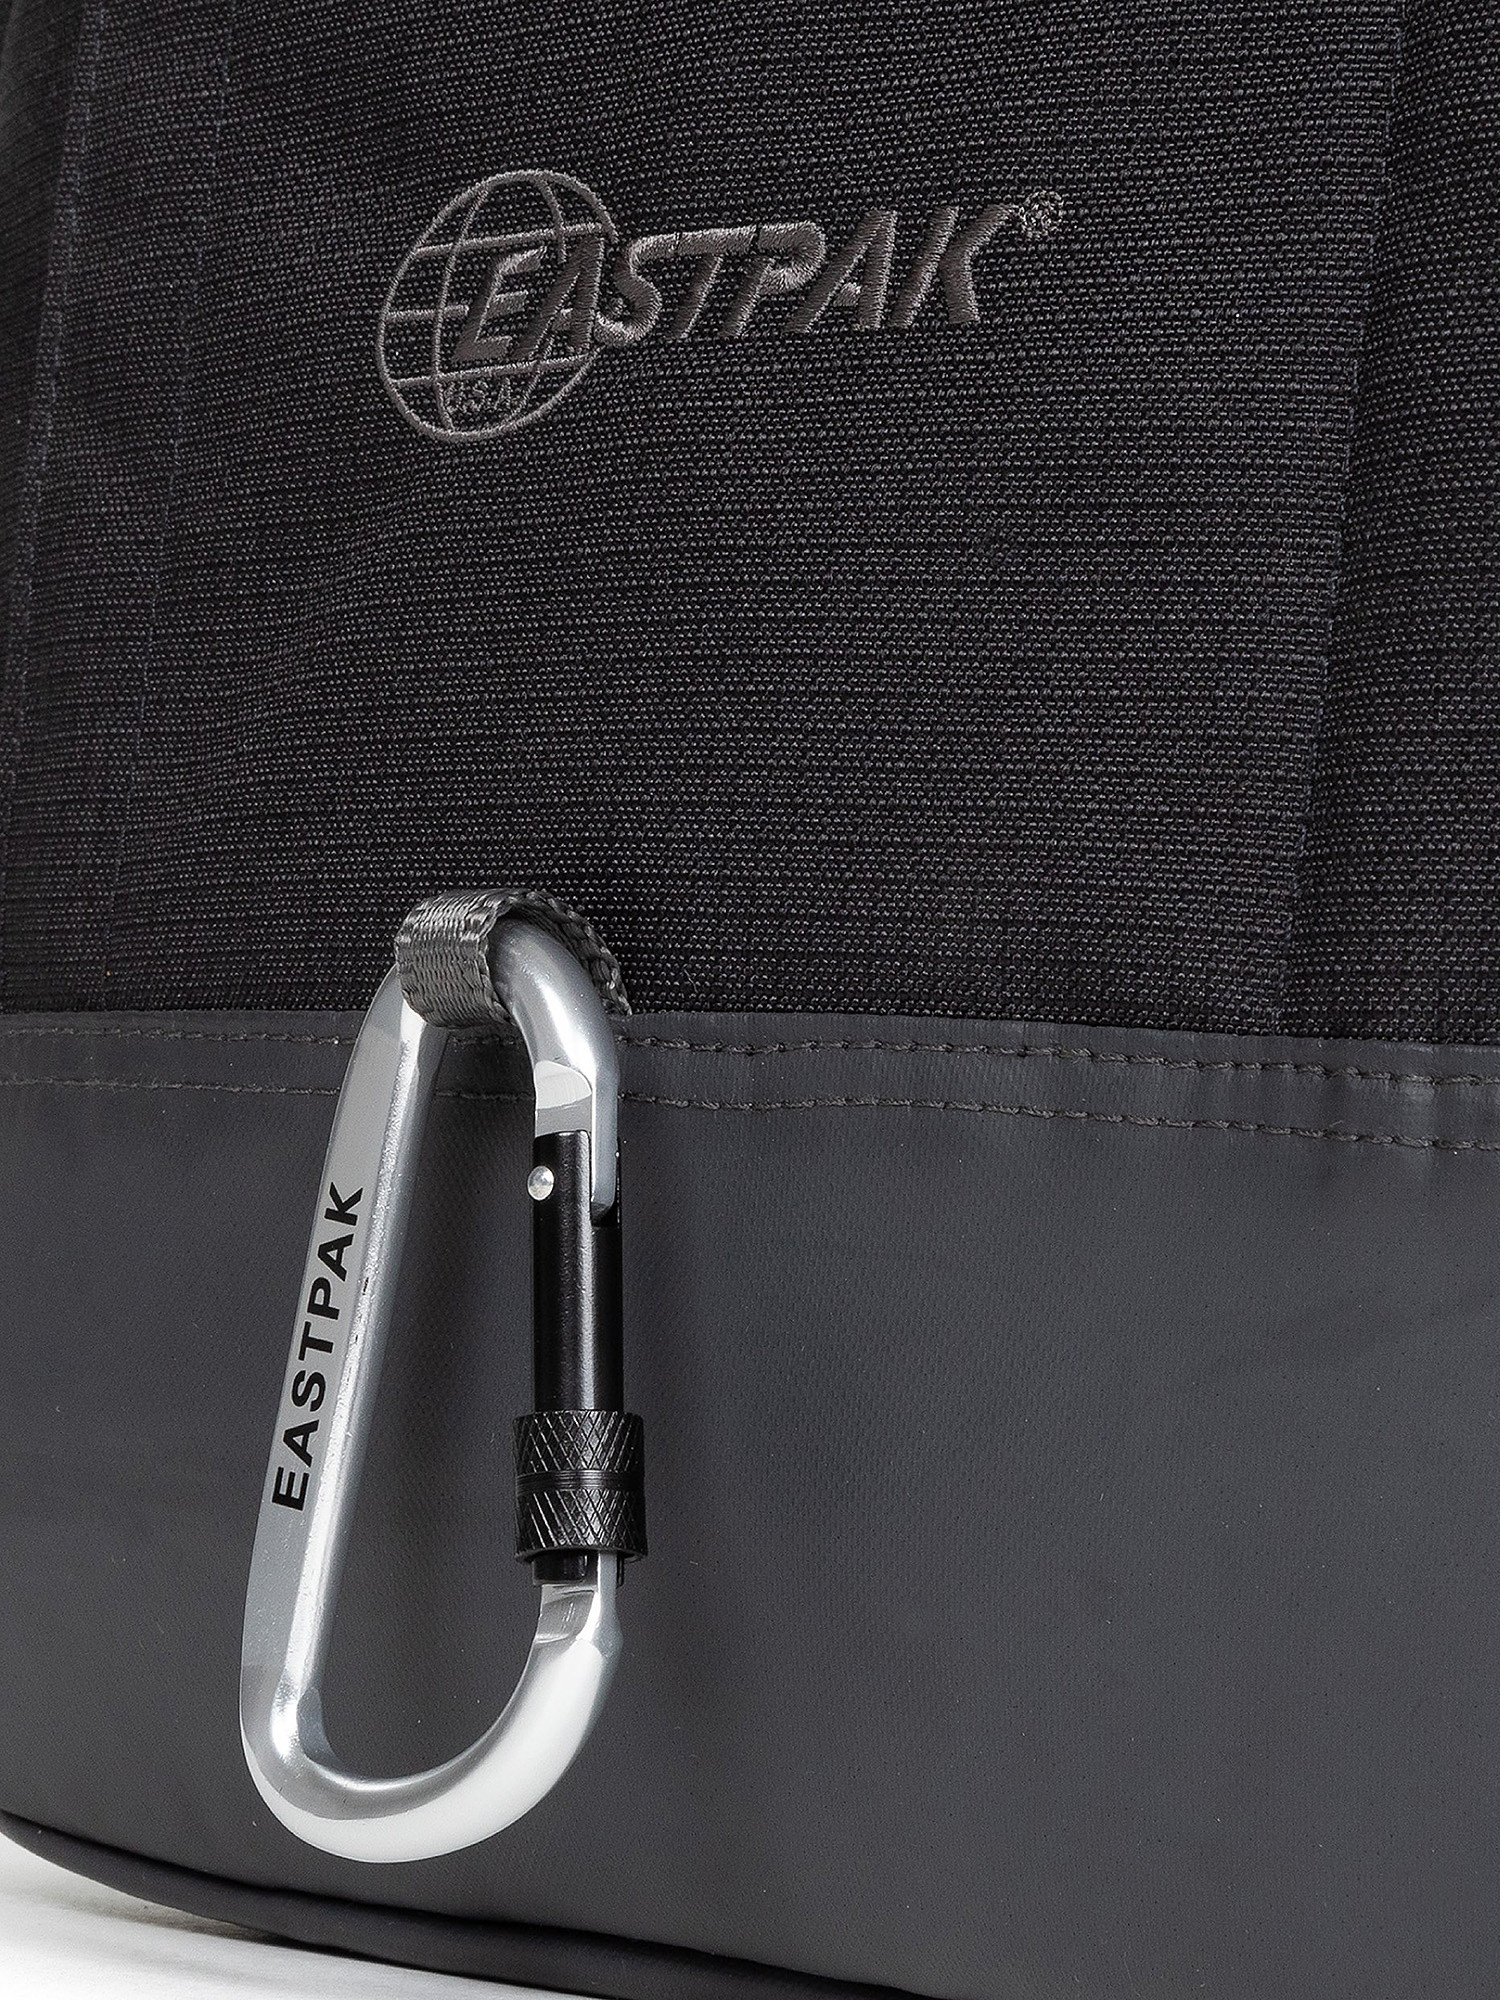 Eastpak - Out Safepack Out Black backpack, Black, large image number 5